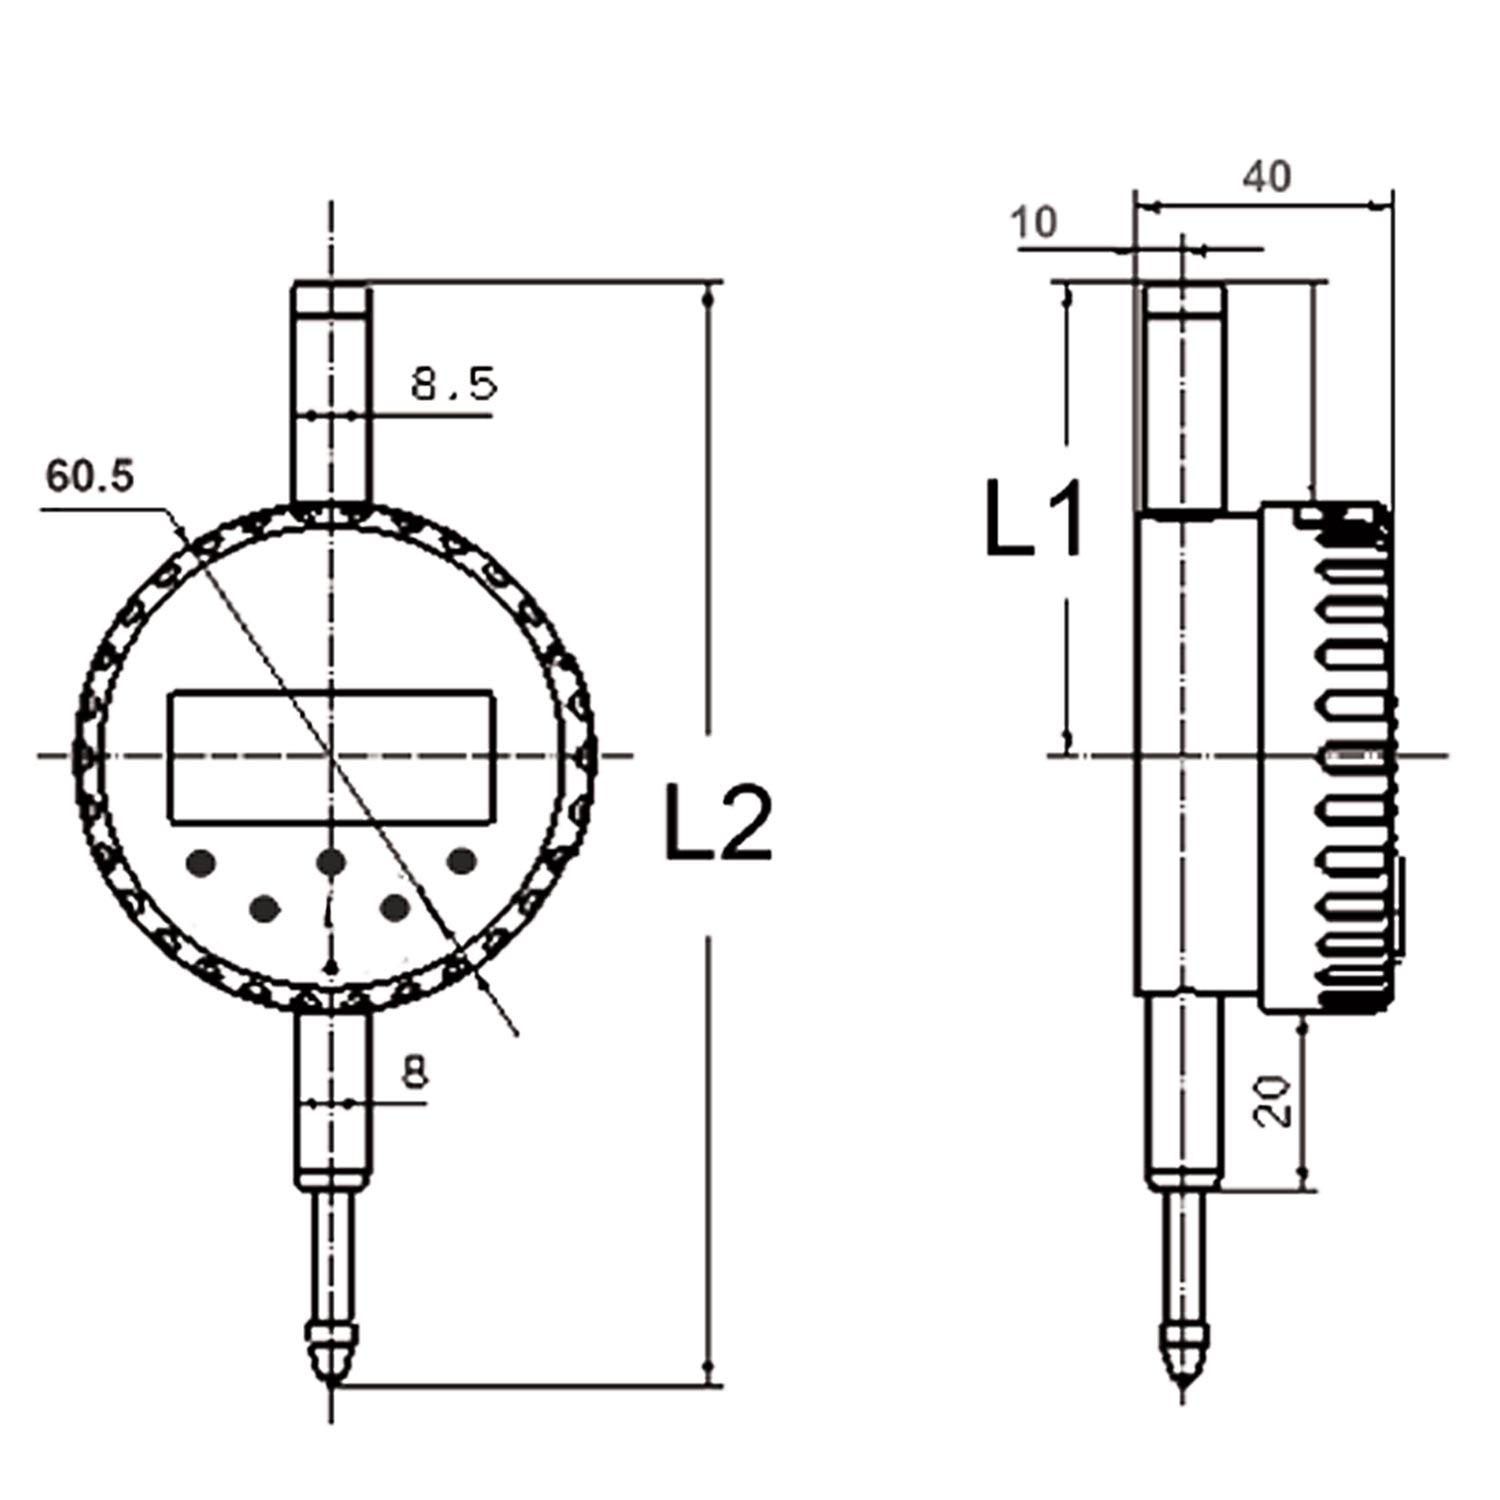 Messzeuge, Messschieber, Mikrometer, Messuhren - Digital-Messuhr, 12,5 x  0,001 mm, 10 µm